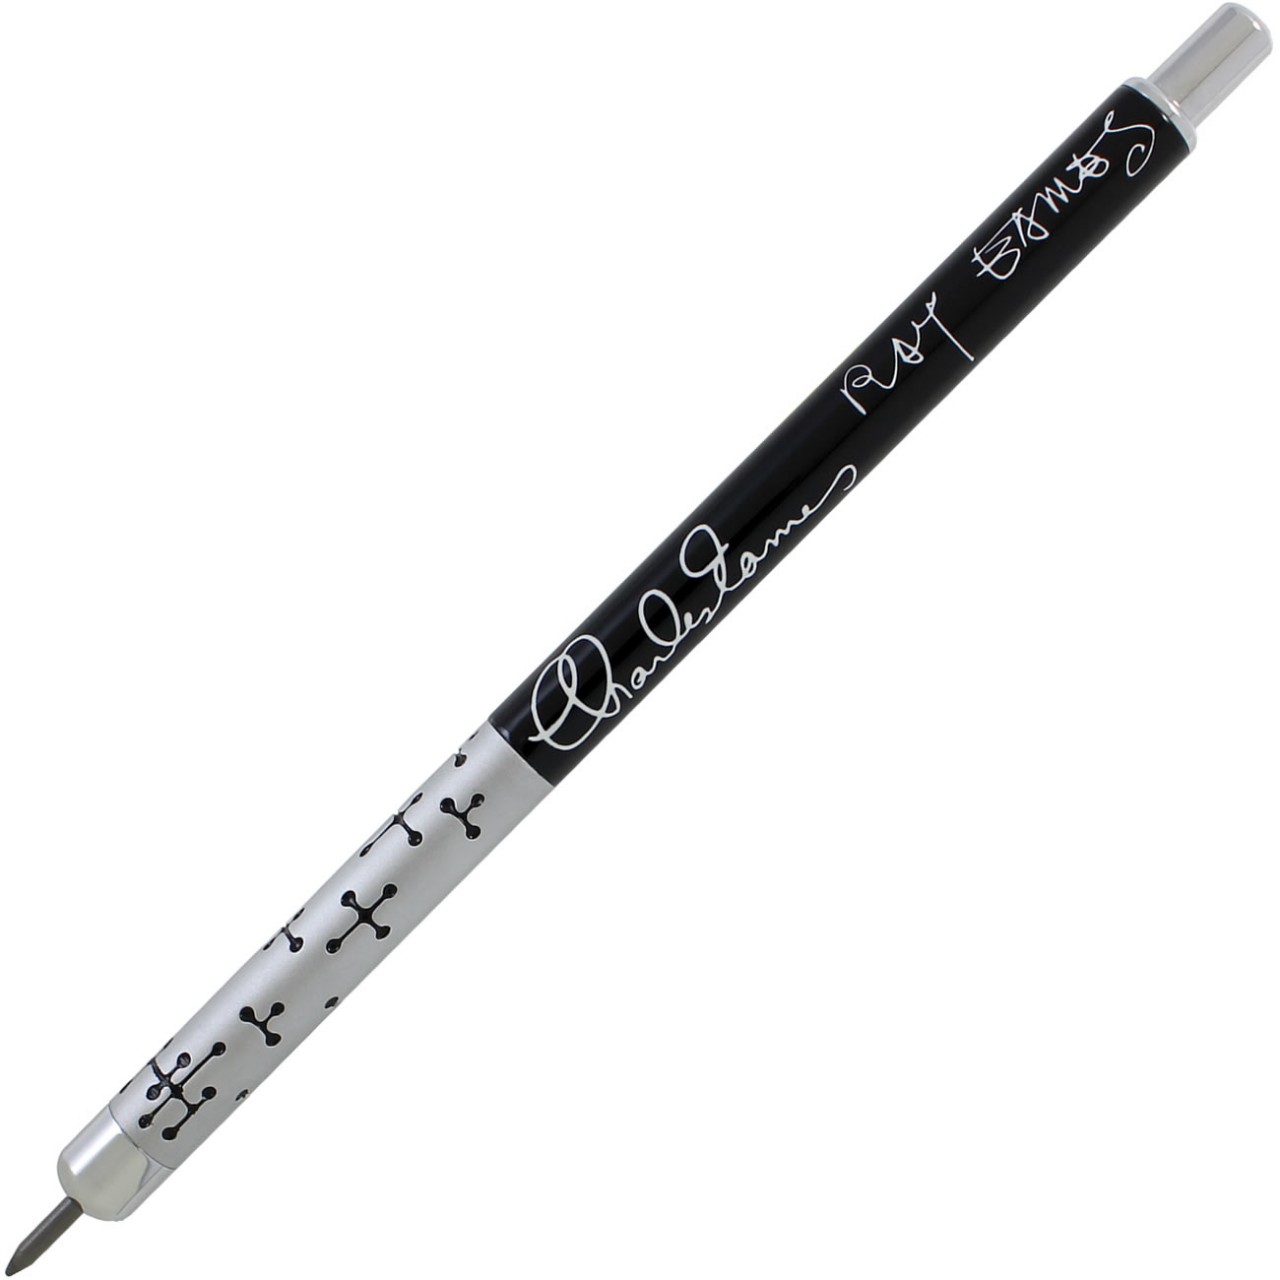 ACME DOTS Mechanical Pencil